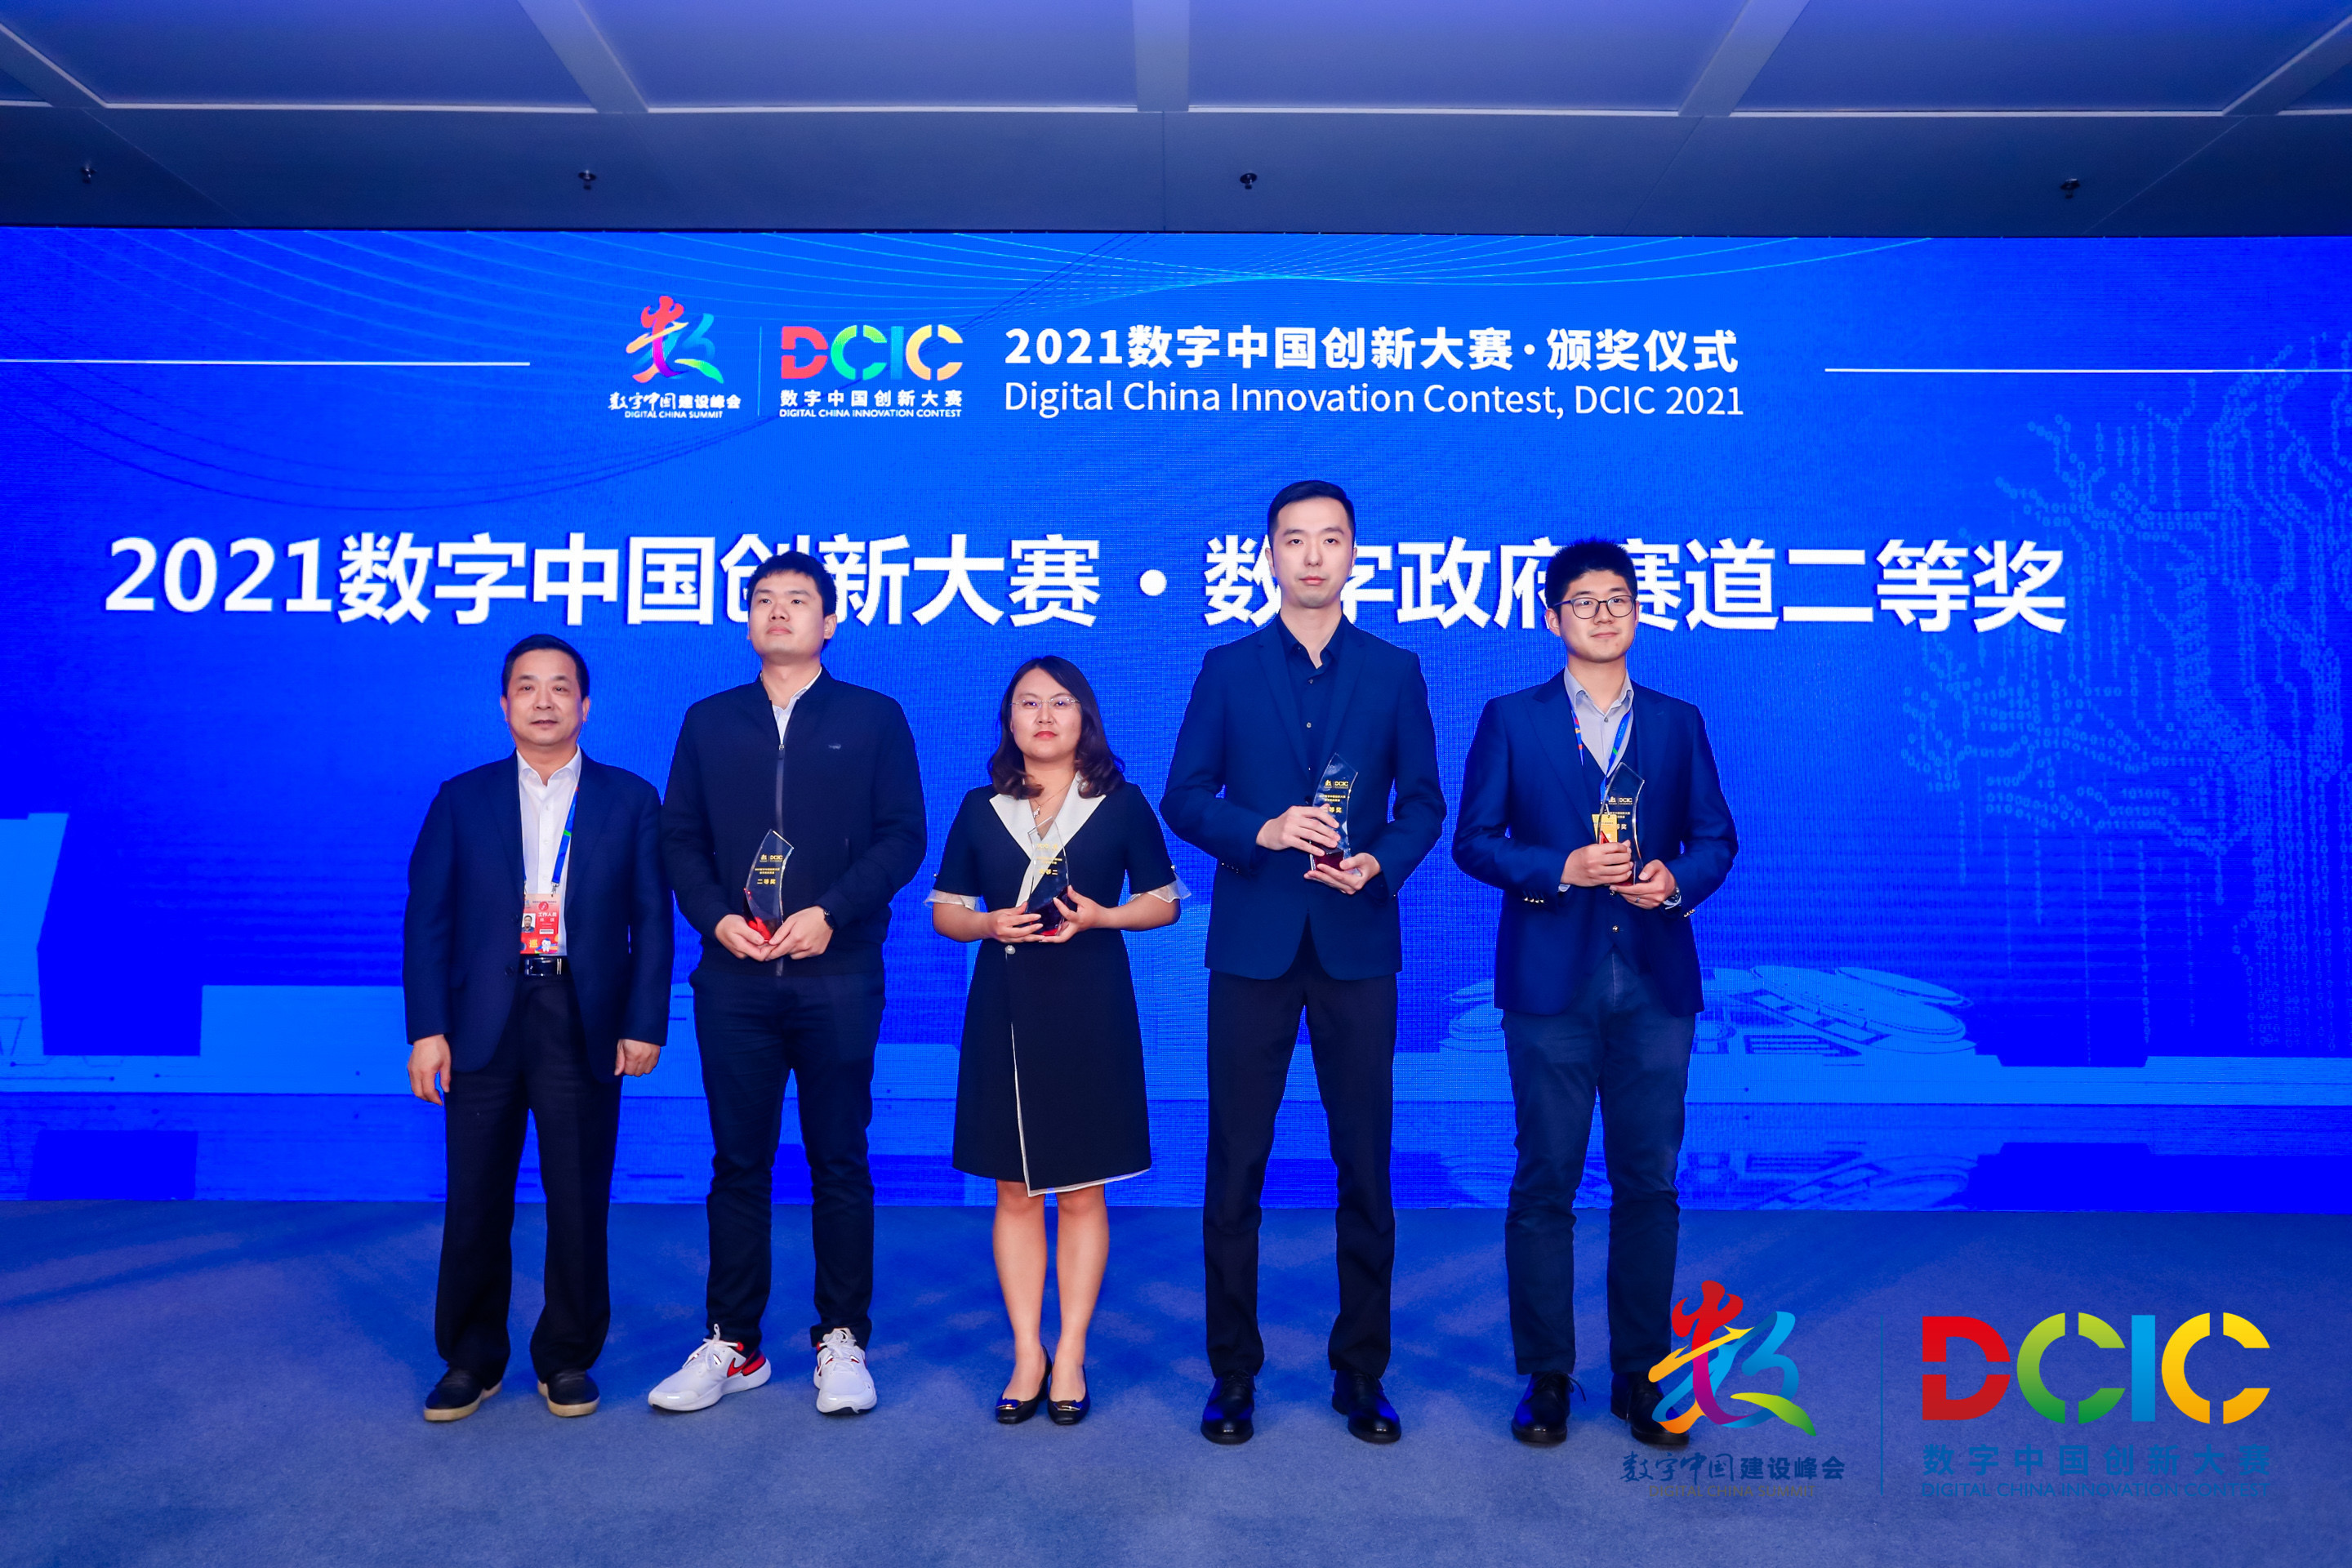 广西数字政务一体化方案荣获数字中国创新大赛总决赛二等奖”